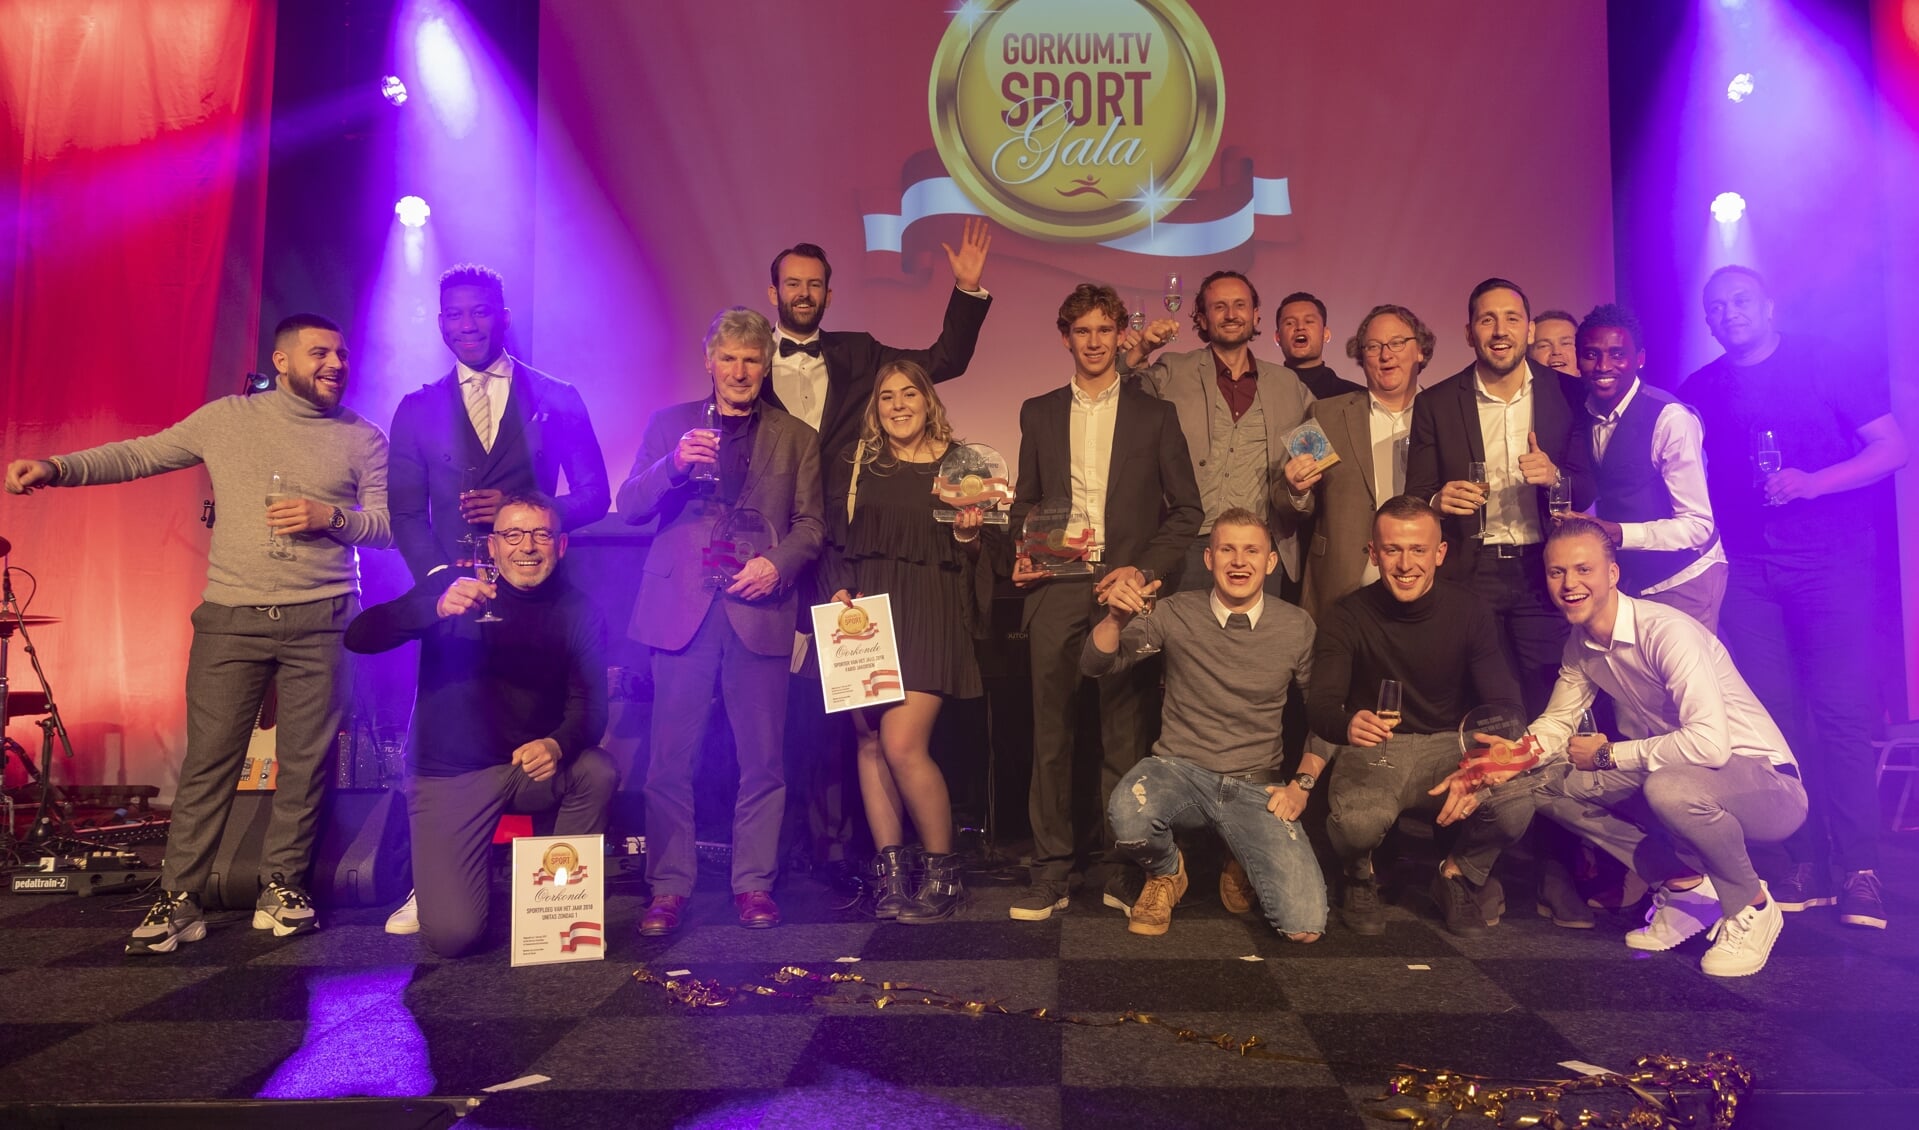 De winnaars van het Gorcums Sportgala in 2019